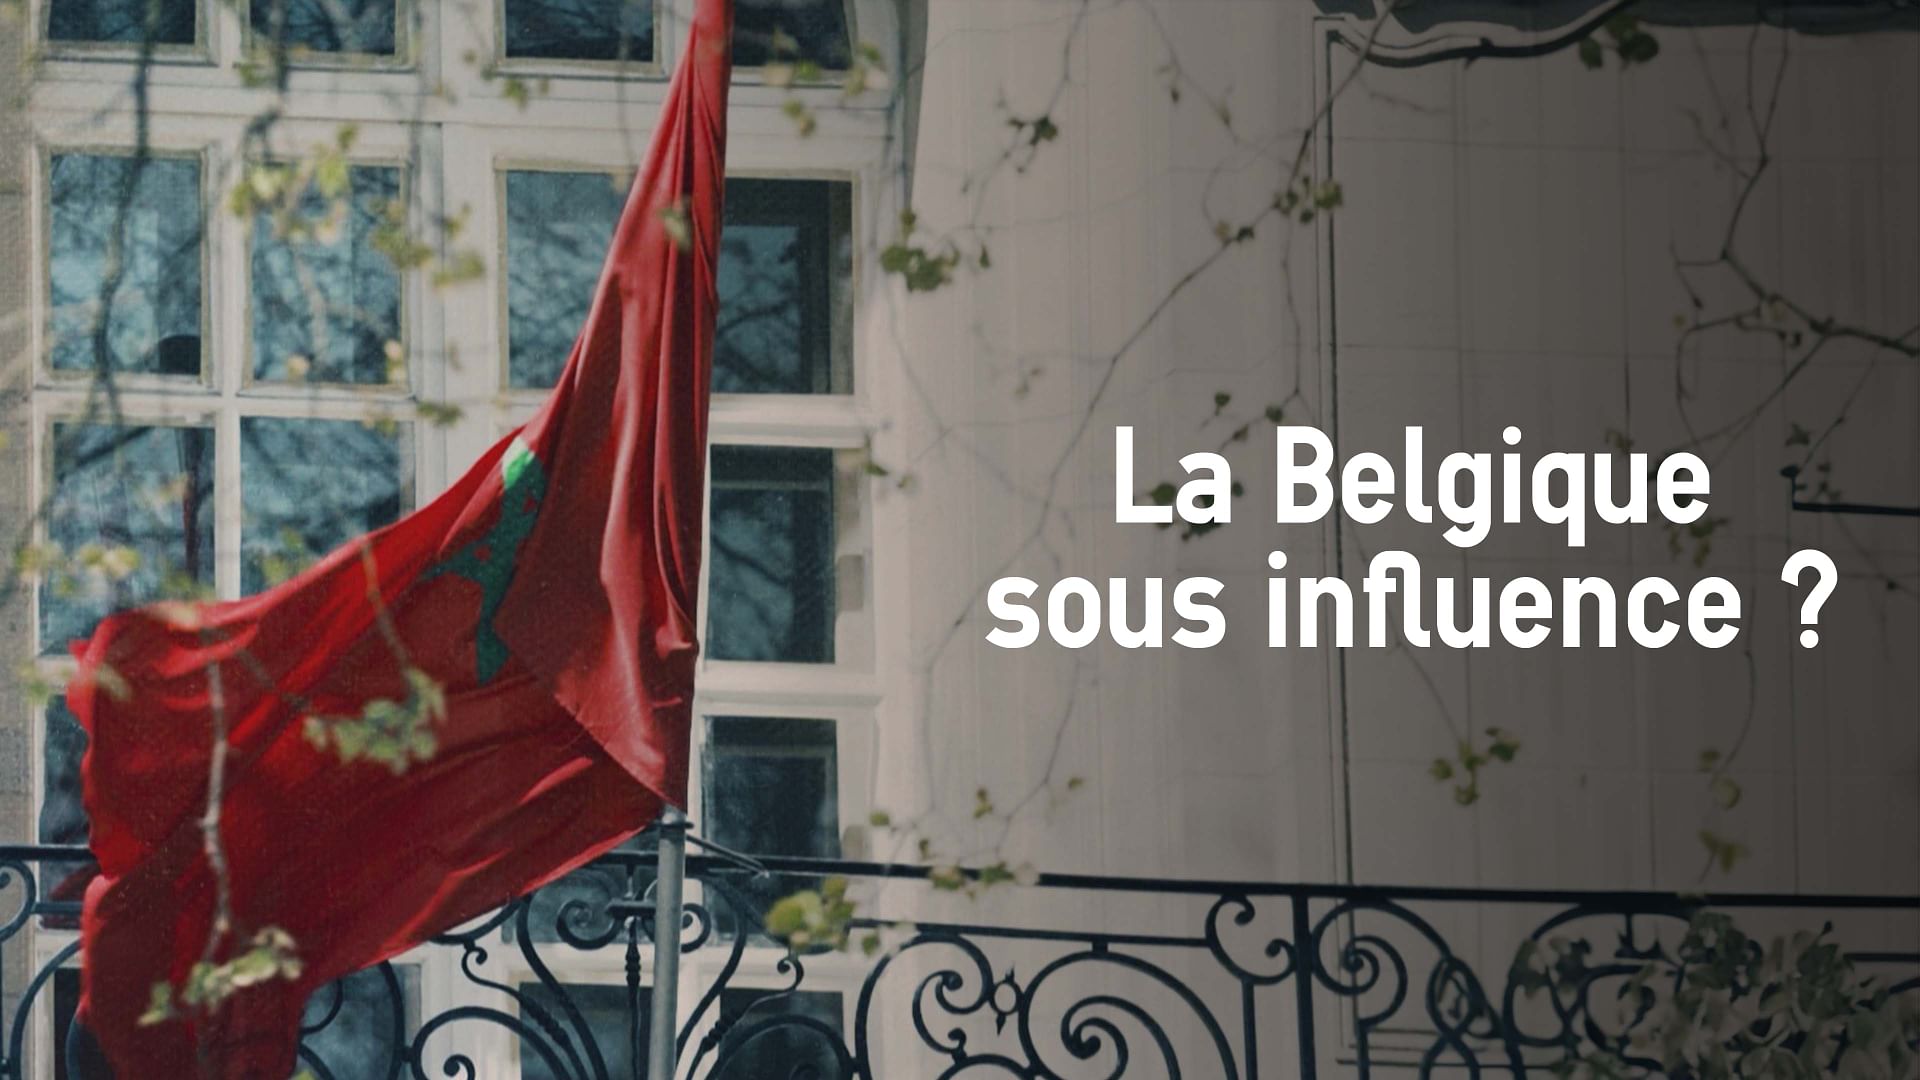 La Belgique sous influence ?